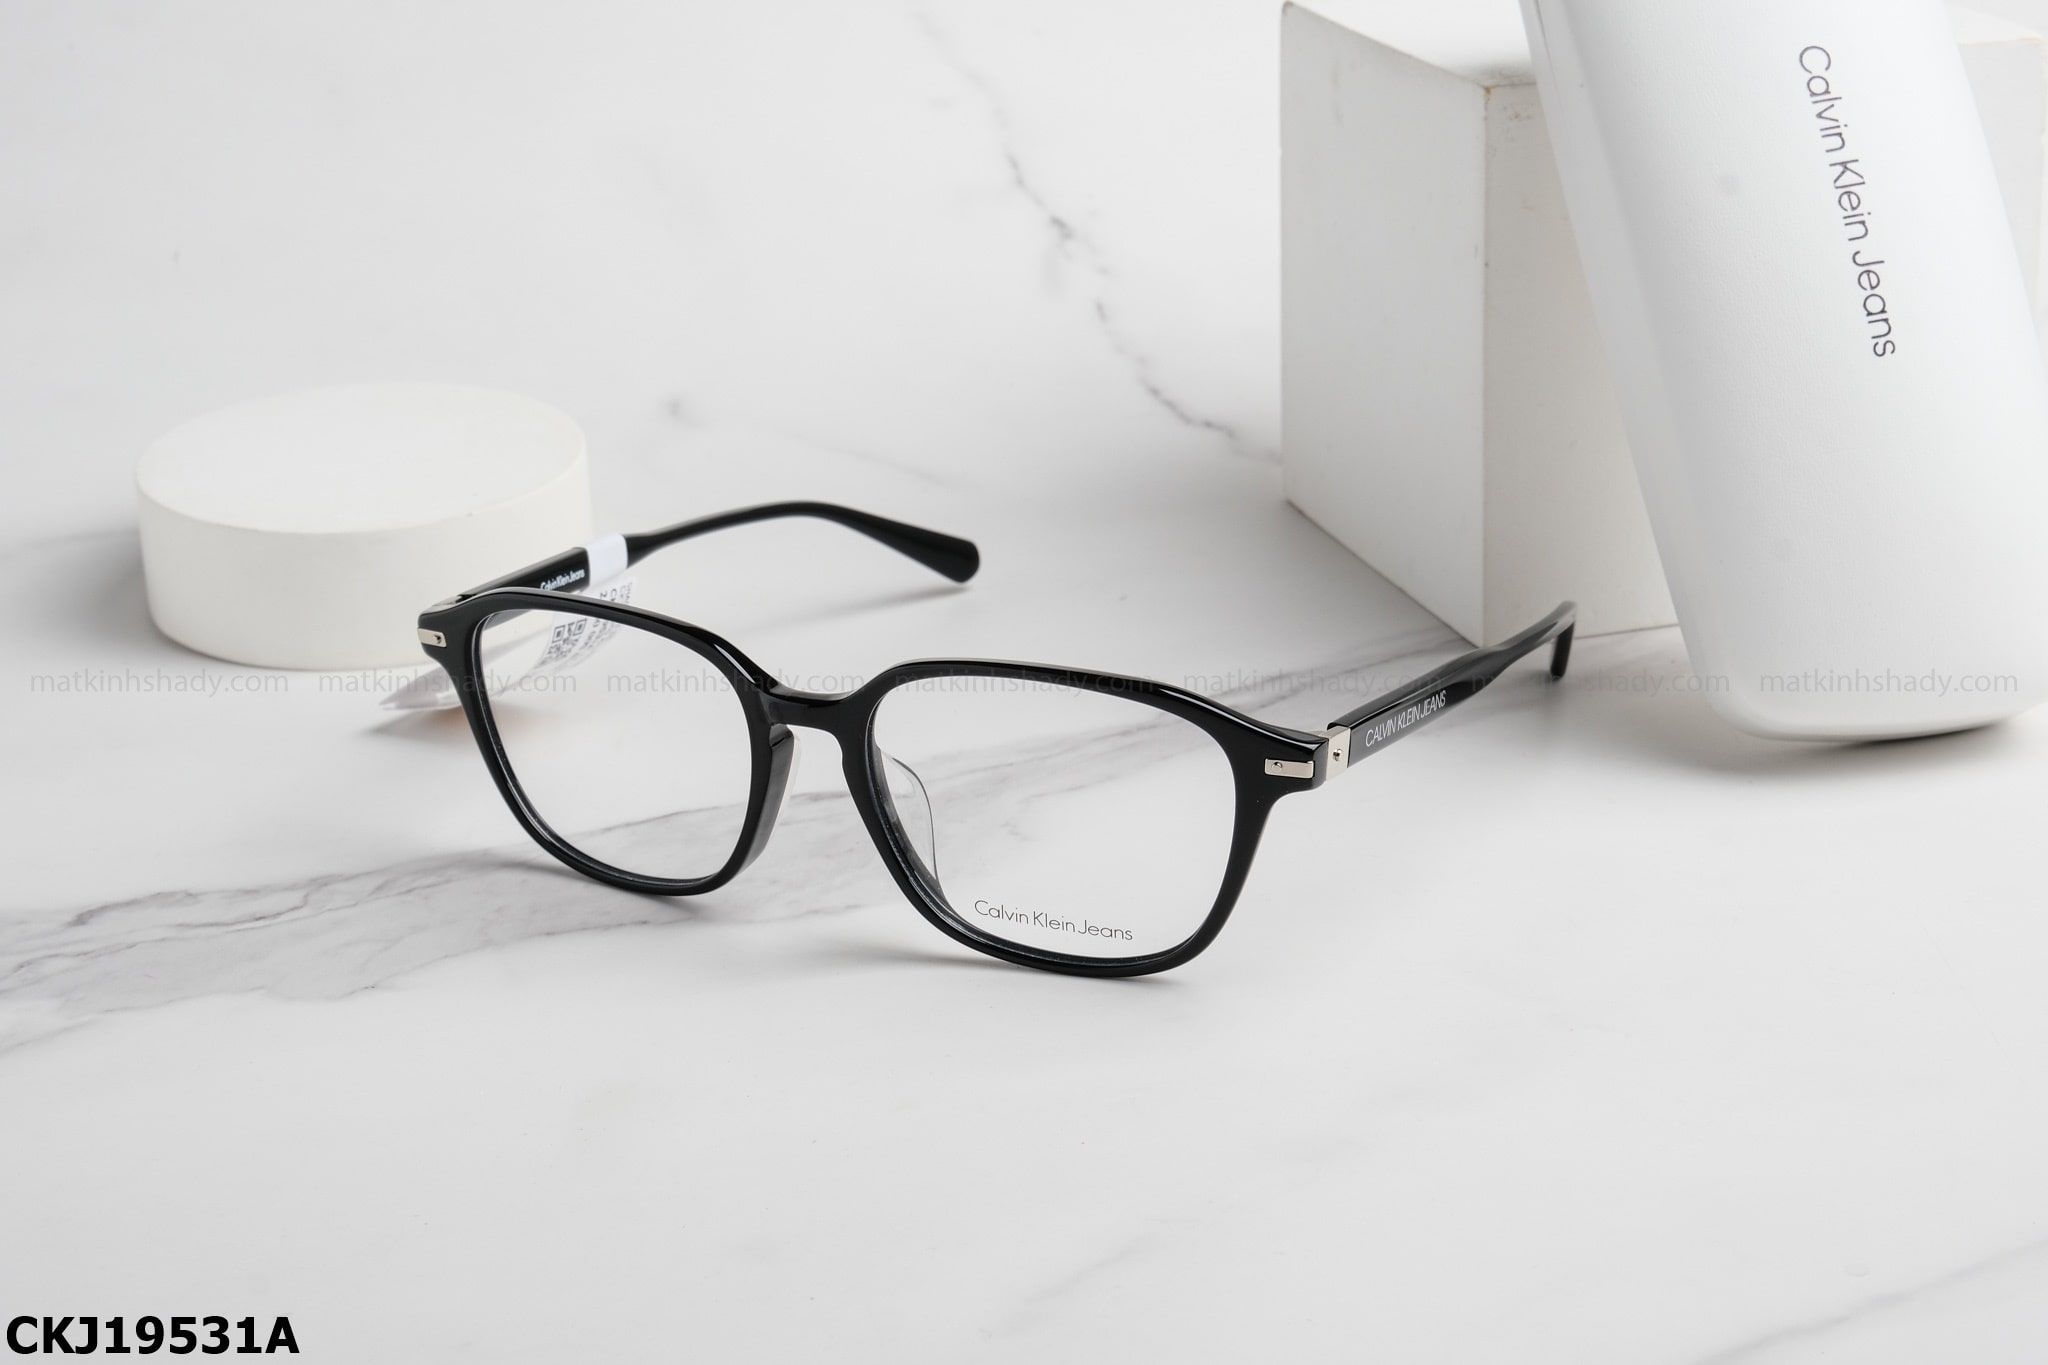  Calvin Klein Eyewear - Glasses - CKJ19531A 